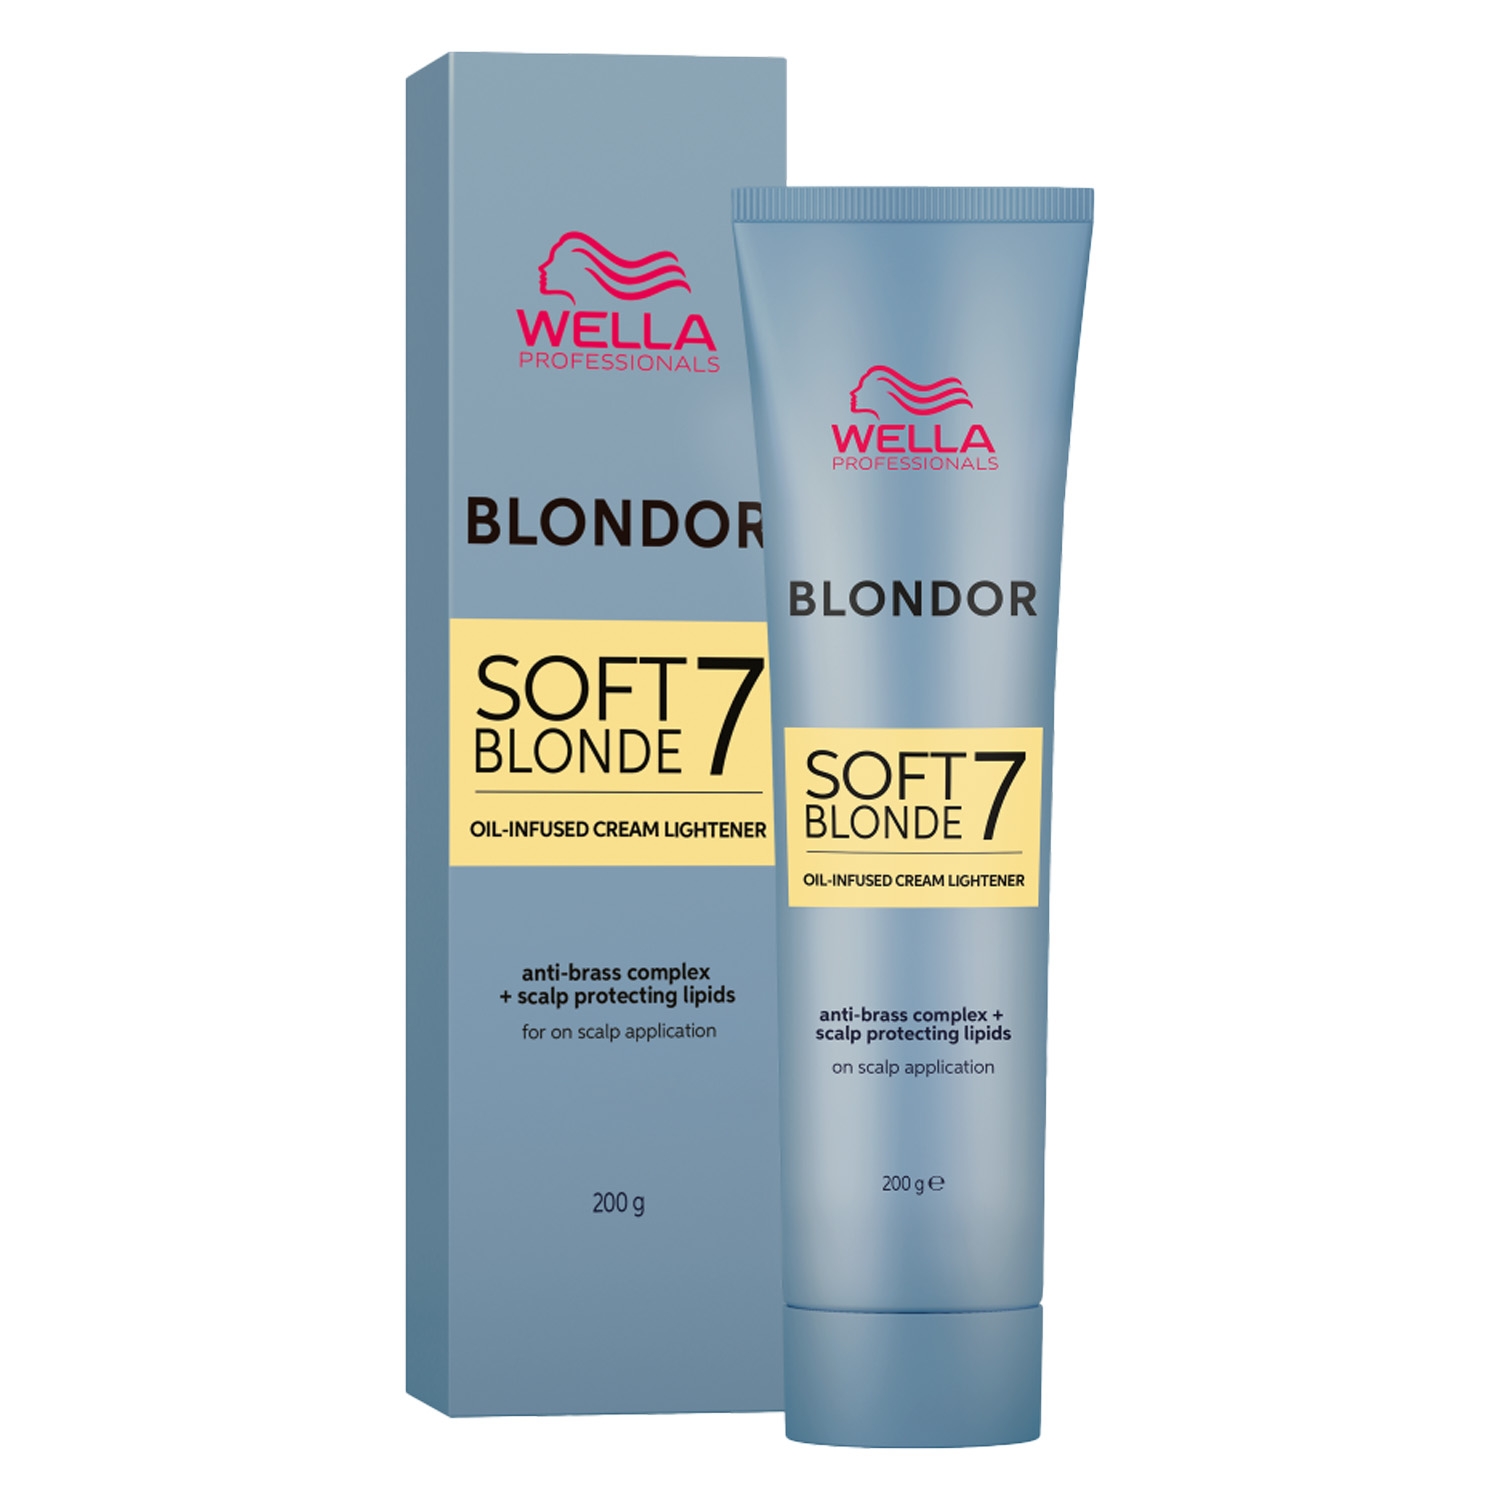 Produktbild von Blondor - Soft Blonde Cream